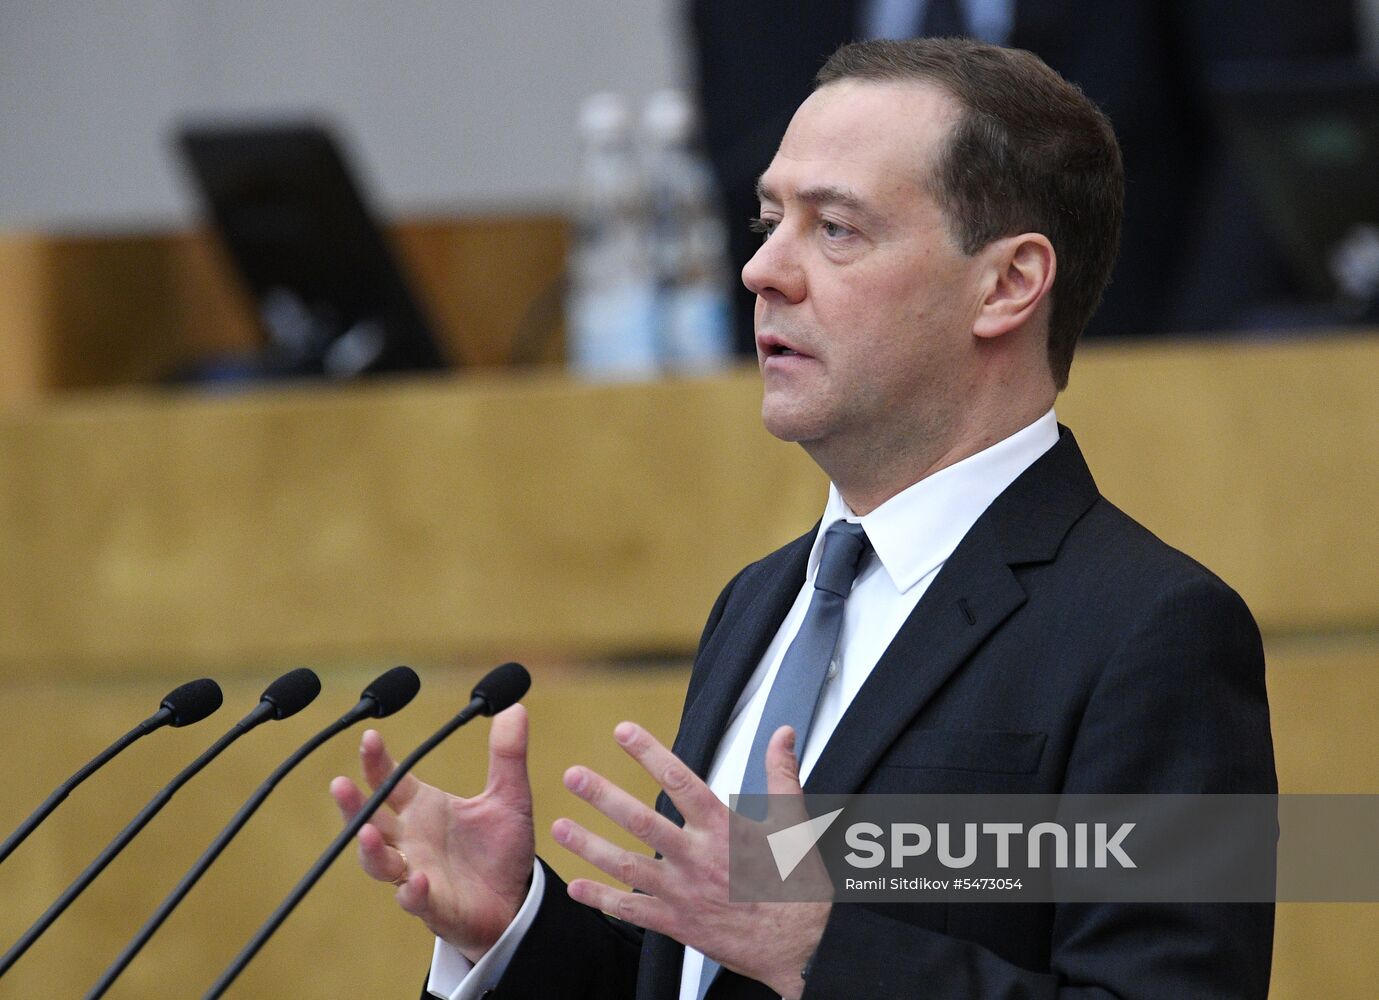 Prime Minister Dmitry Medvedev speaks at State Duma